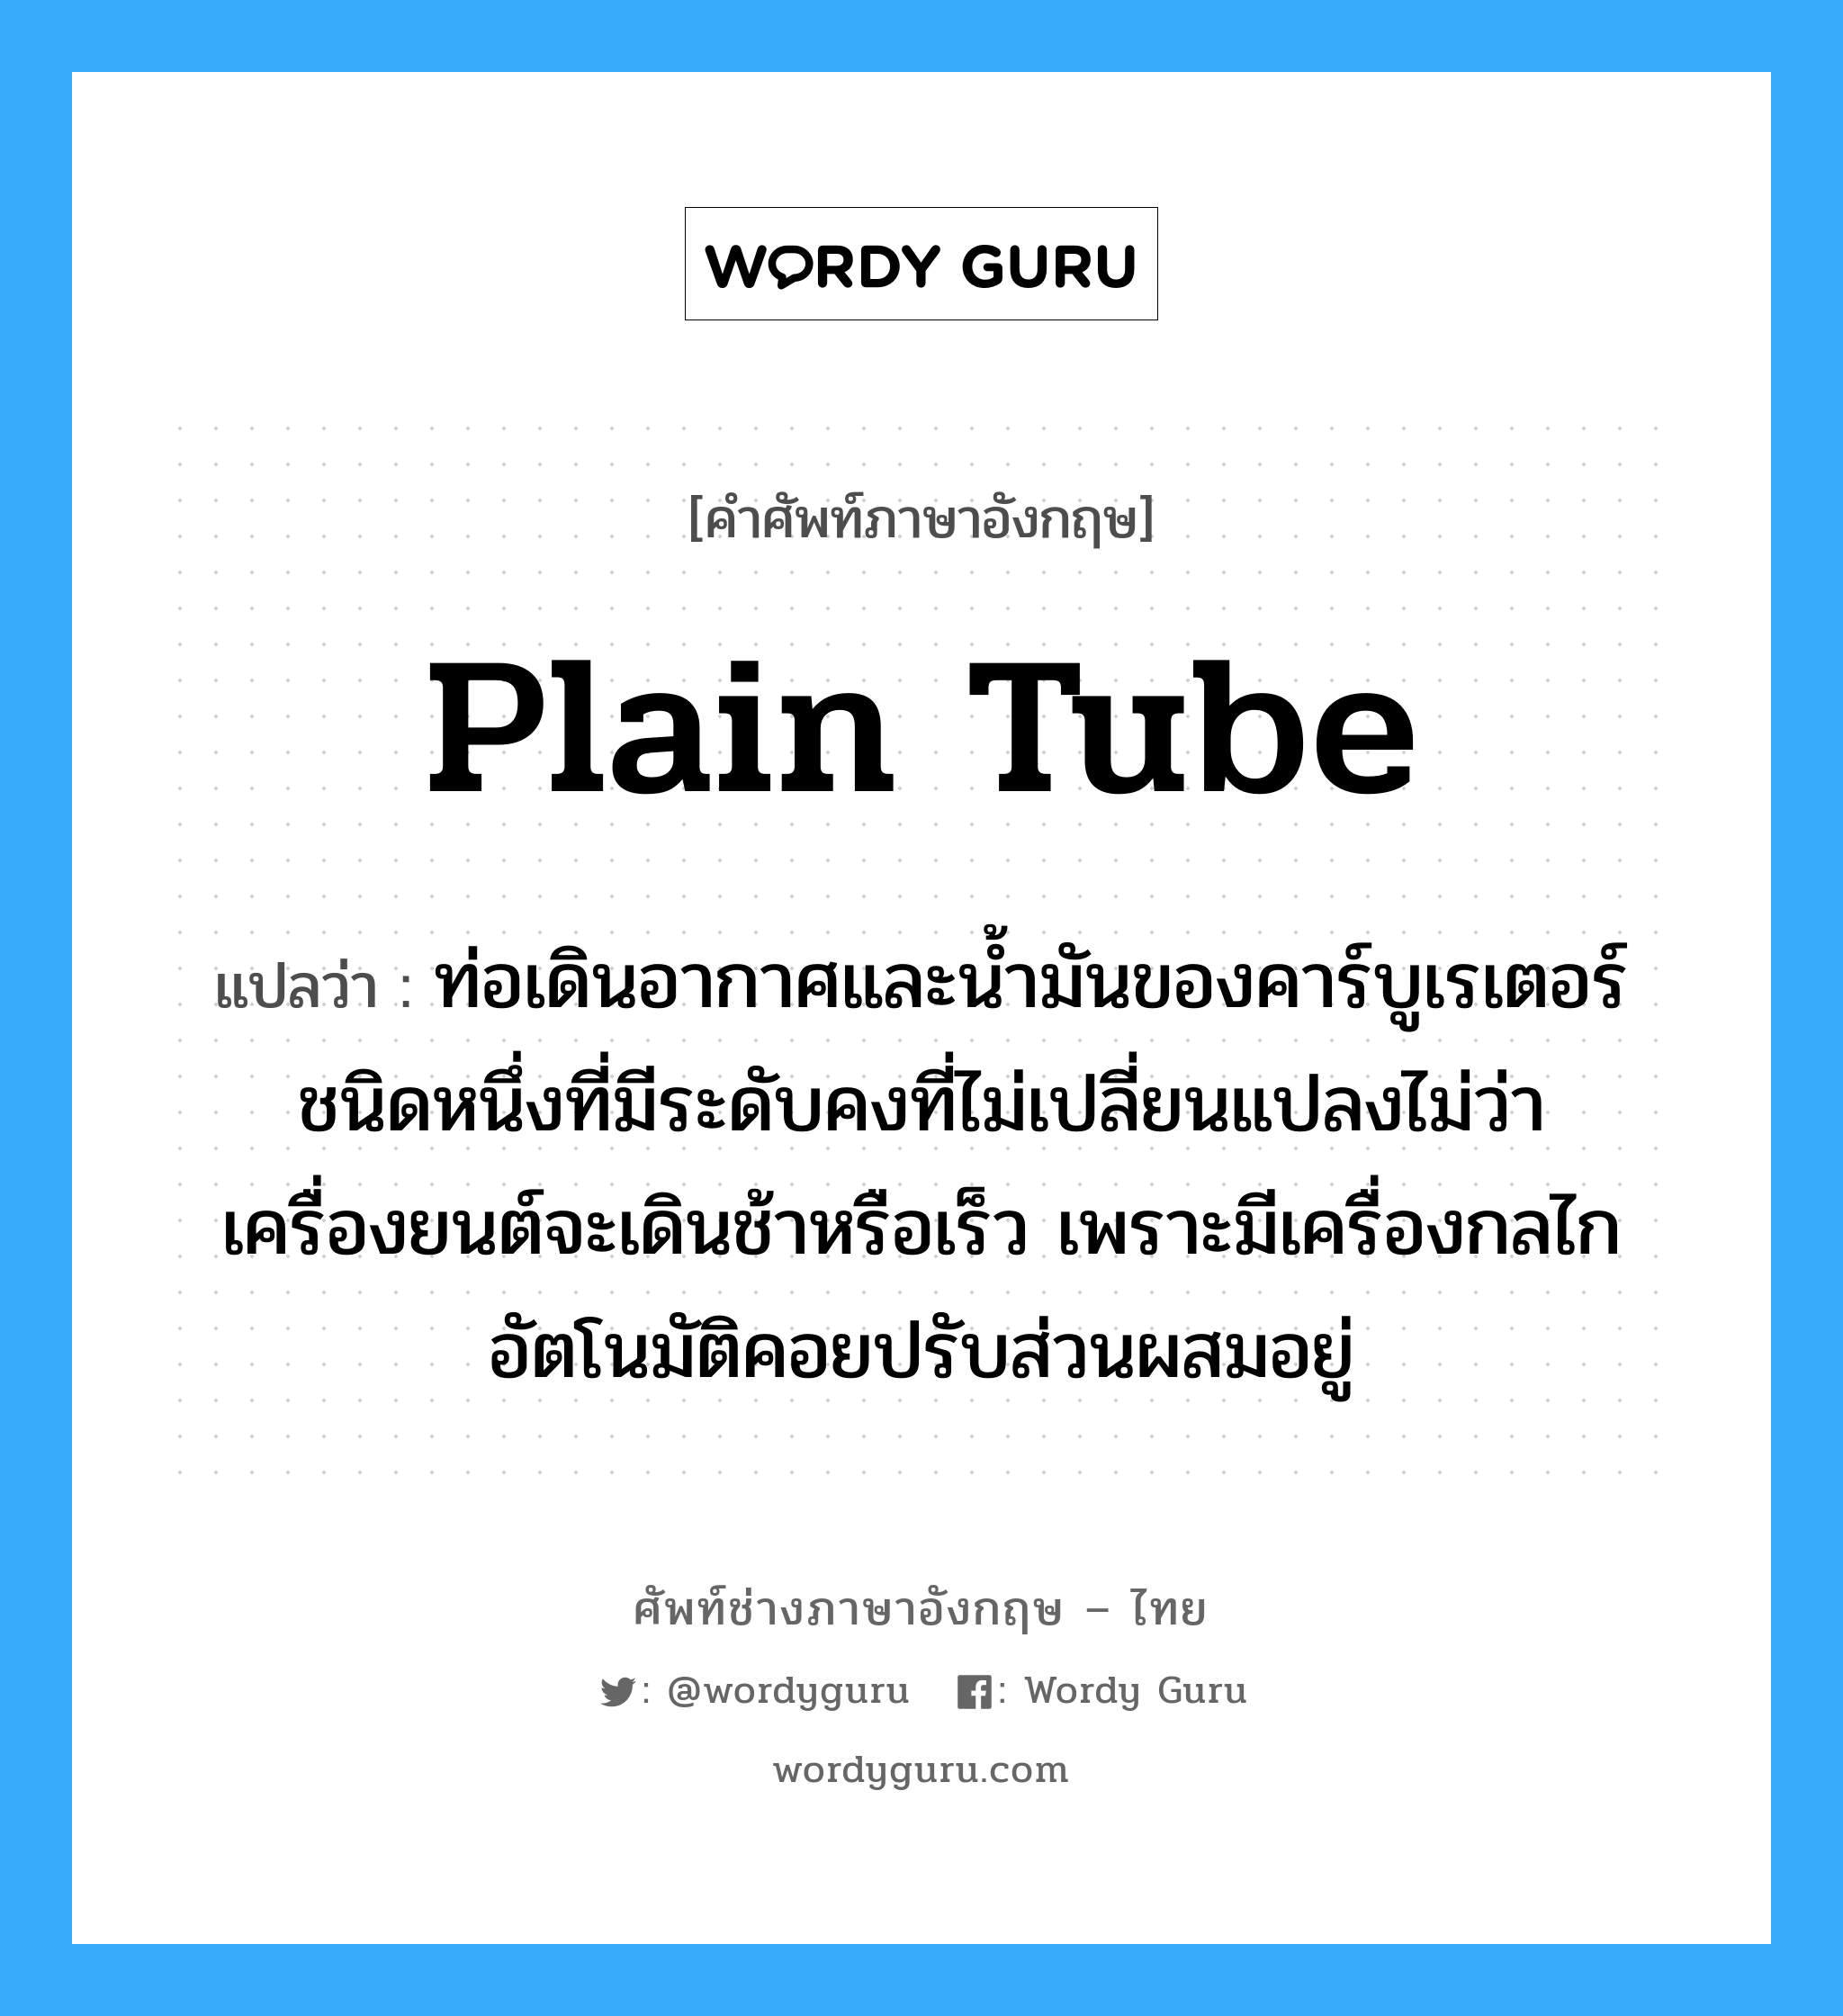 plain tube แปลว่า?, คำศัพท์ช่างภาษาอังกฤษ - ไทย plain tube คำศัพท์ภาษาอังกฤษ plain tube แปลว่า ท่อเดินอากาศและน้ำมันของคาร์บูเรเตอร์ชนิดหนึ่งที่มีระดับคงที่ไม่เปลี่ยนแปลงไม่ว่าเครื่องยนต์จะเดินช้าหรือเร็ว เพราะมีเครื่องกลไกอัตโนมัติคอยปรับส่วนผสมอยู่